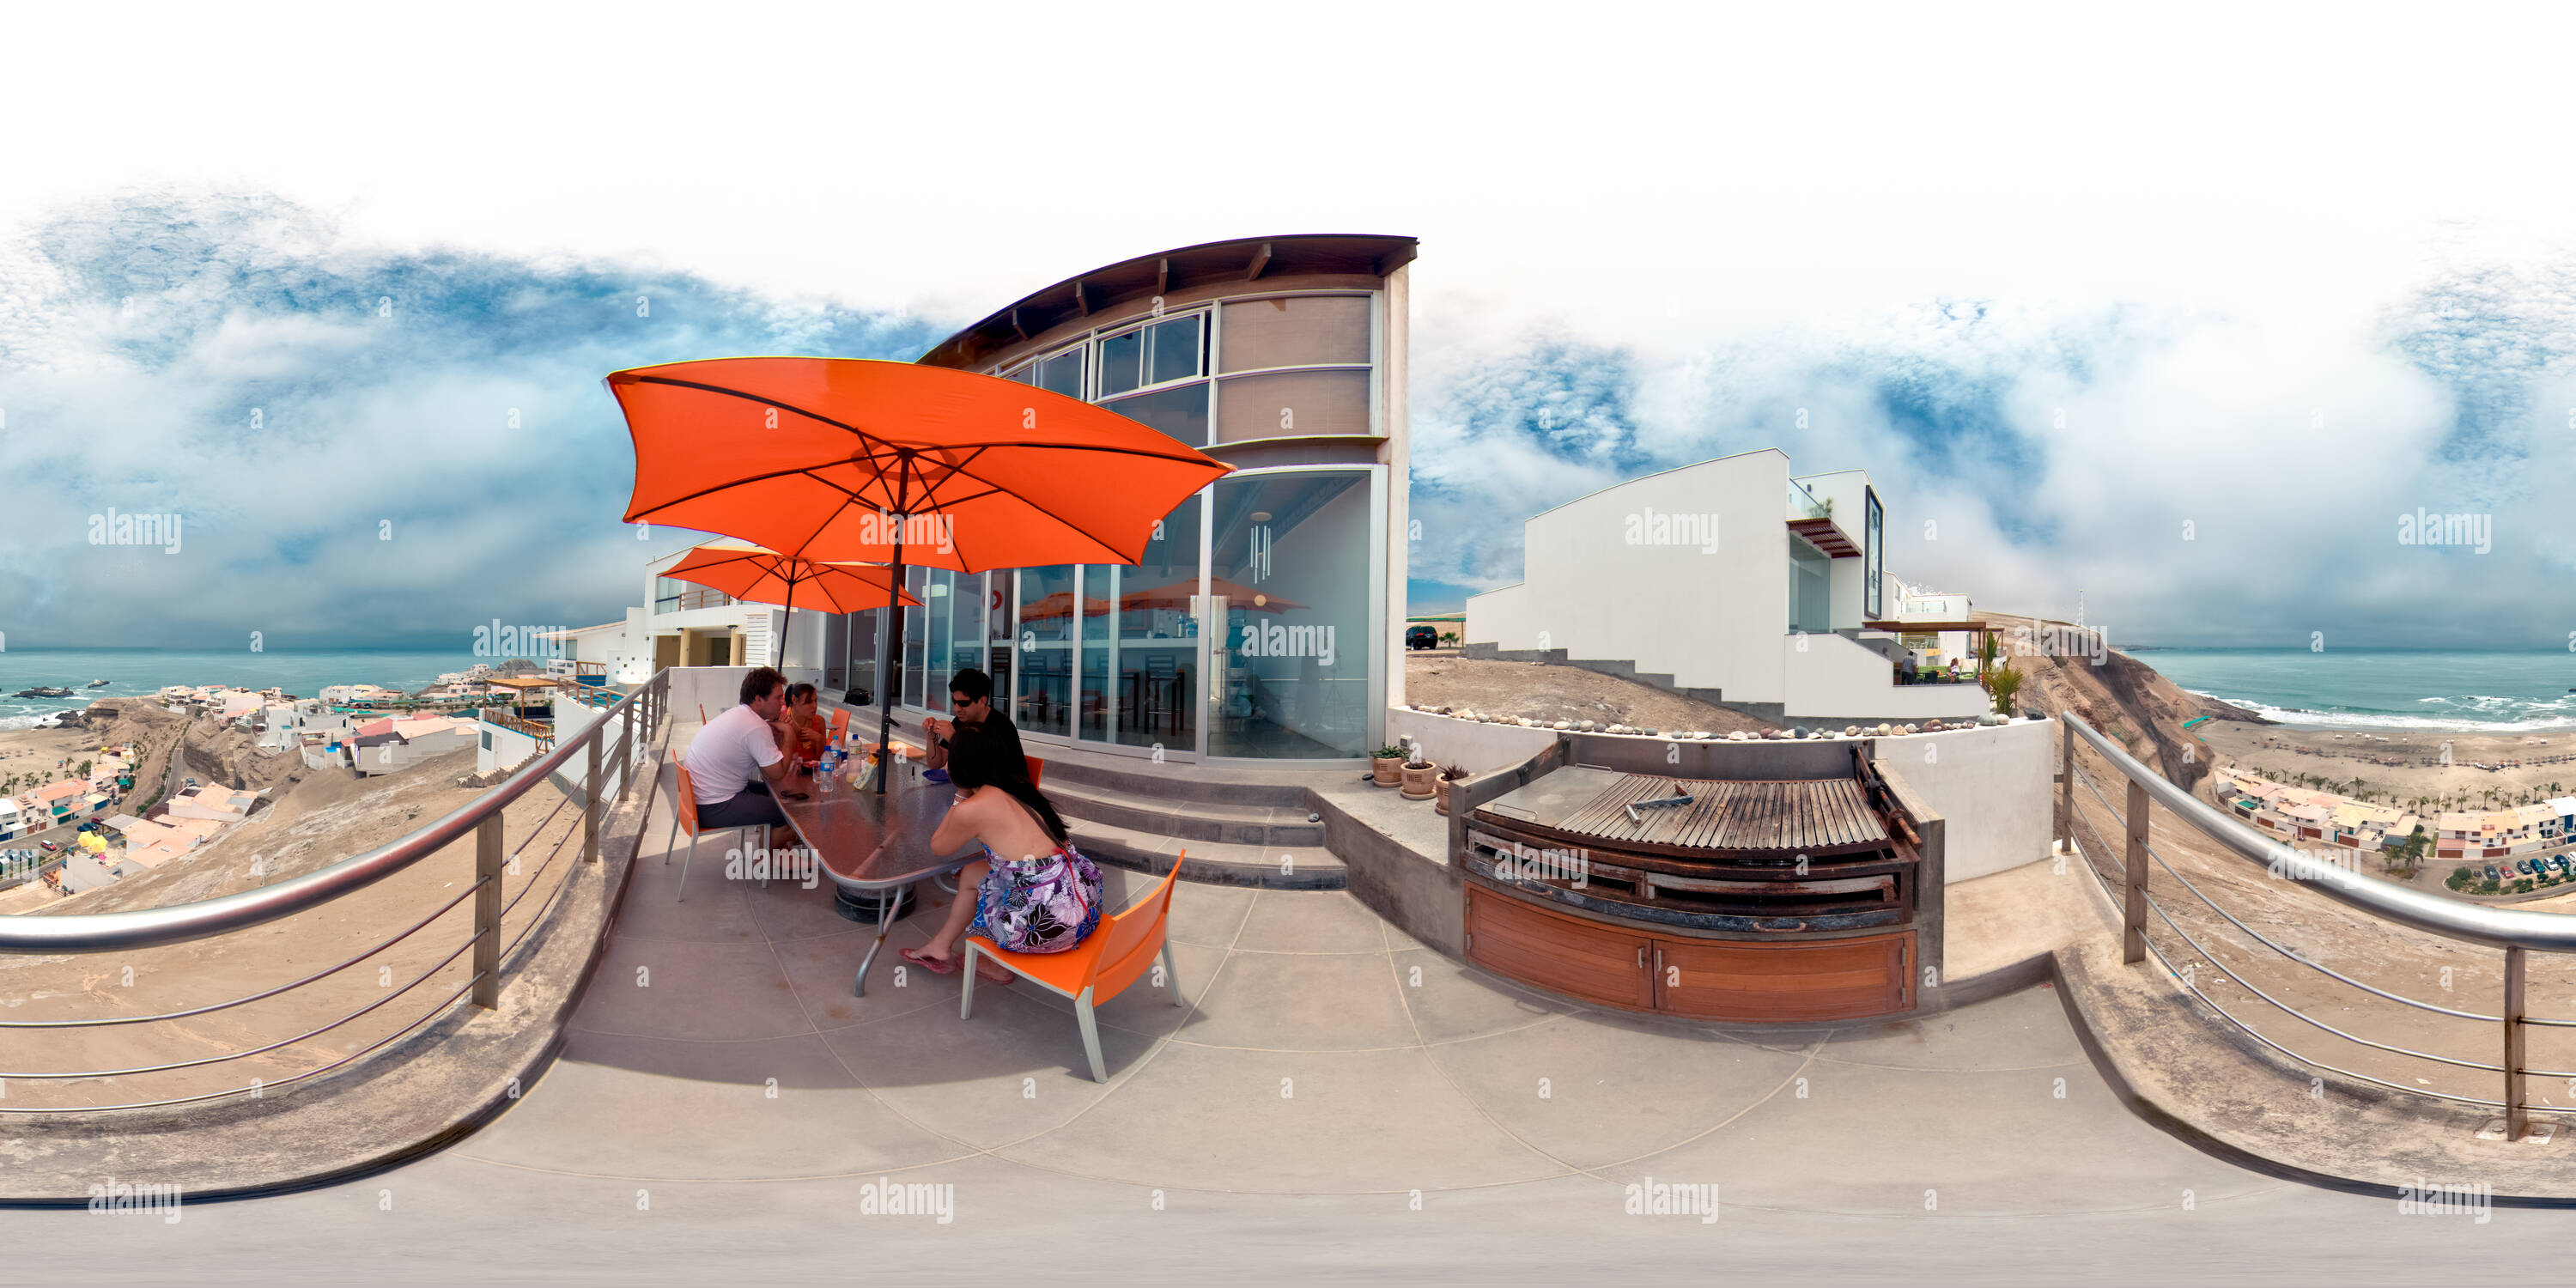 Visualizzazione panoramica a 360 gradi di Playa Barrancadero, Lima, Perù